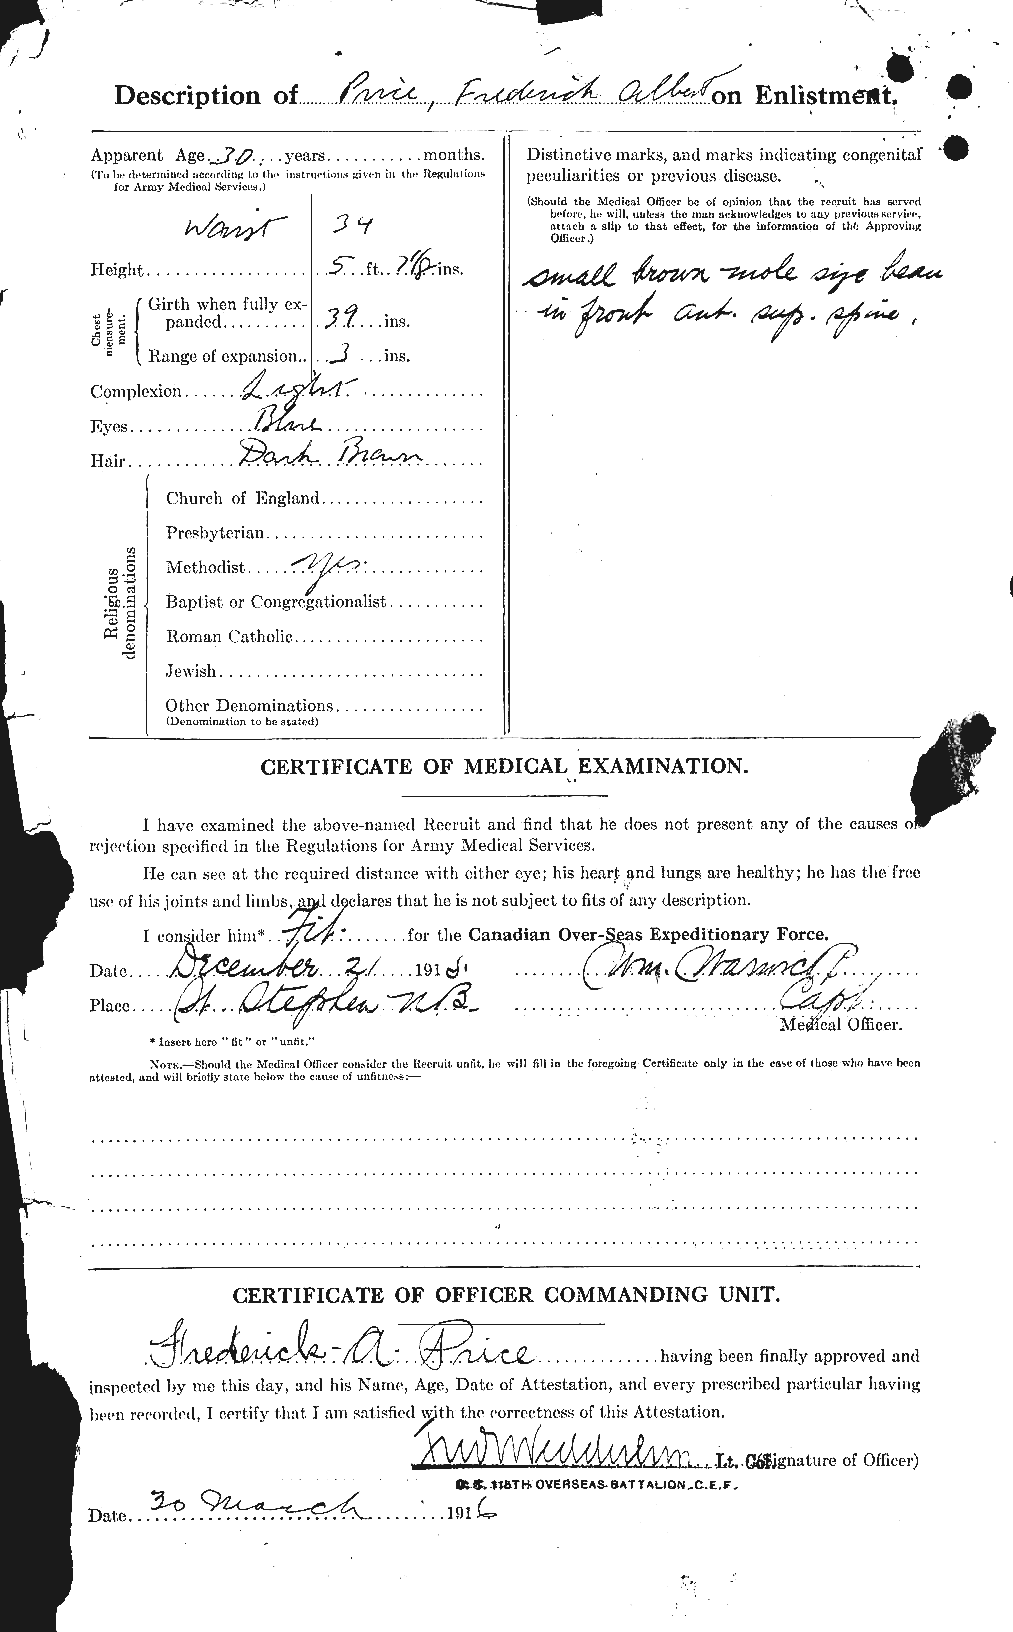 Dossiers du Personnel de la Première Guerre mondiale - CEC 587070b